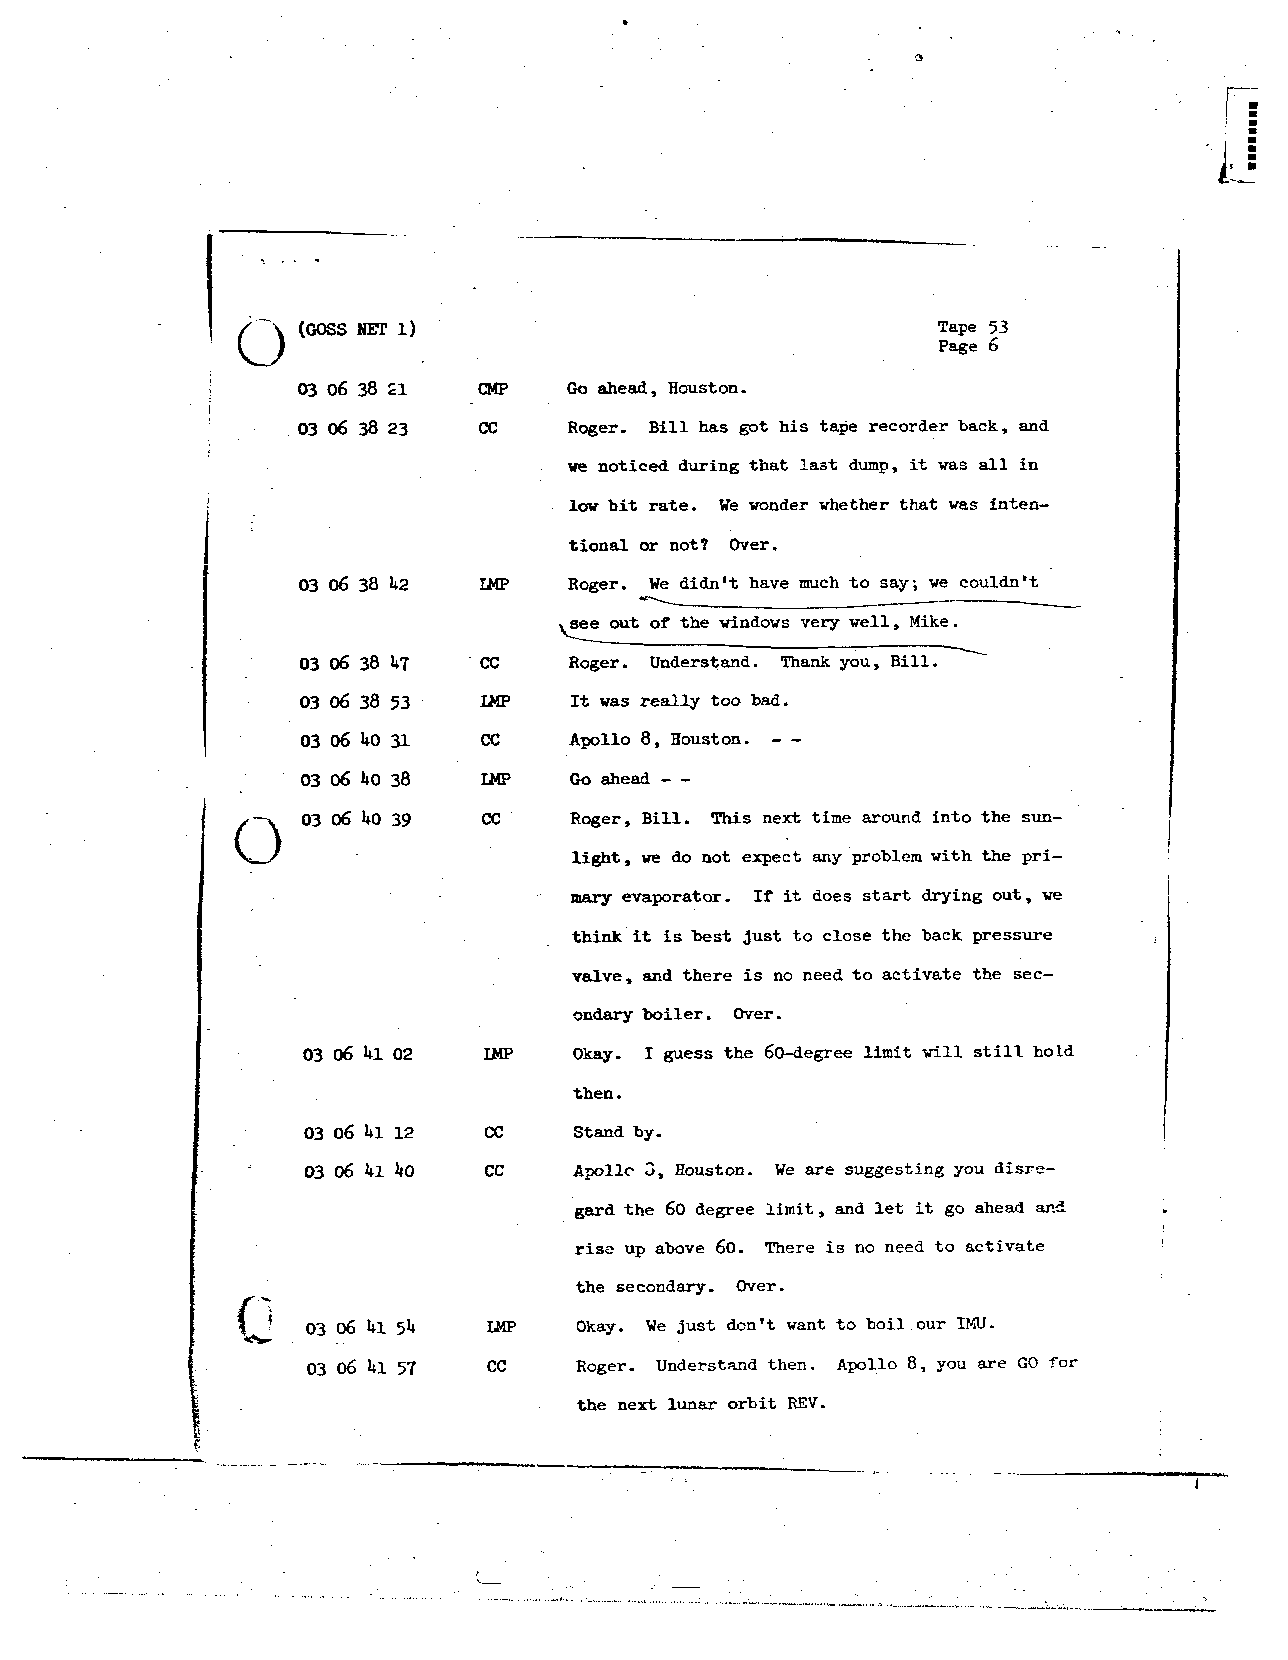 Page 424 of Apollo 8’s original transcript